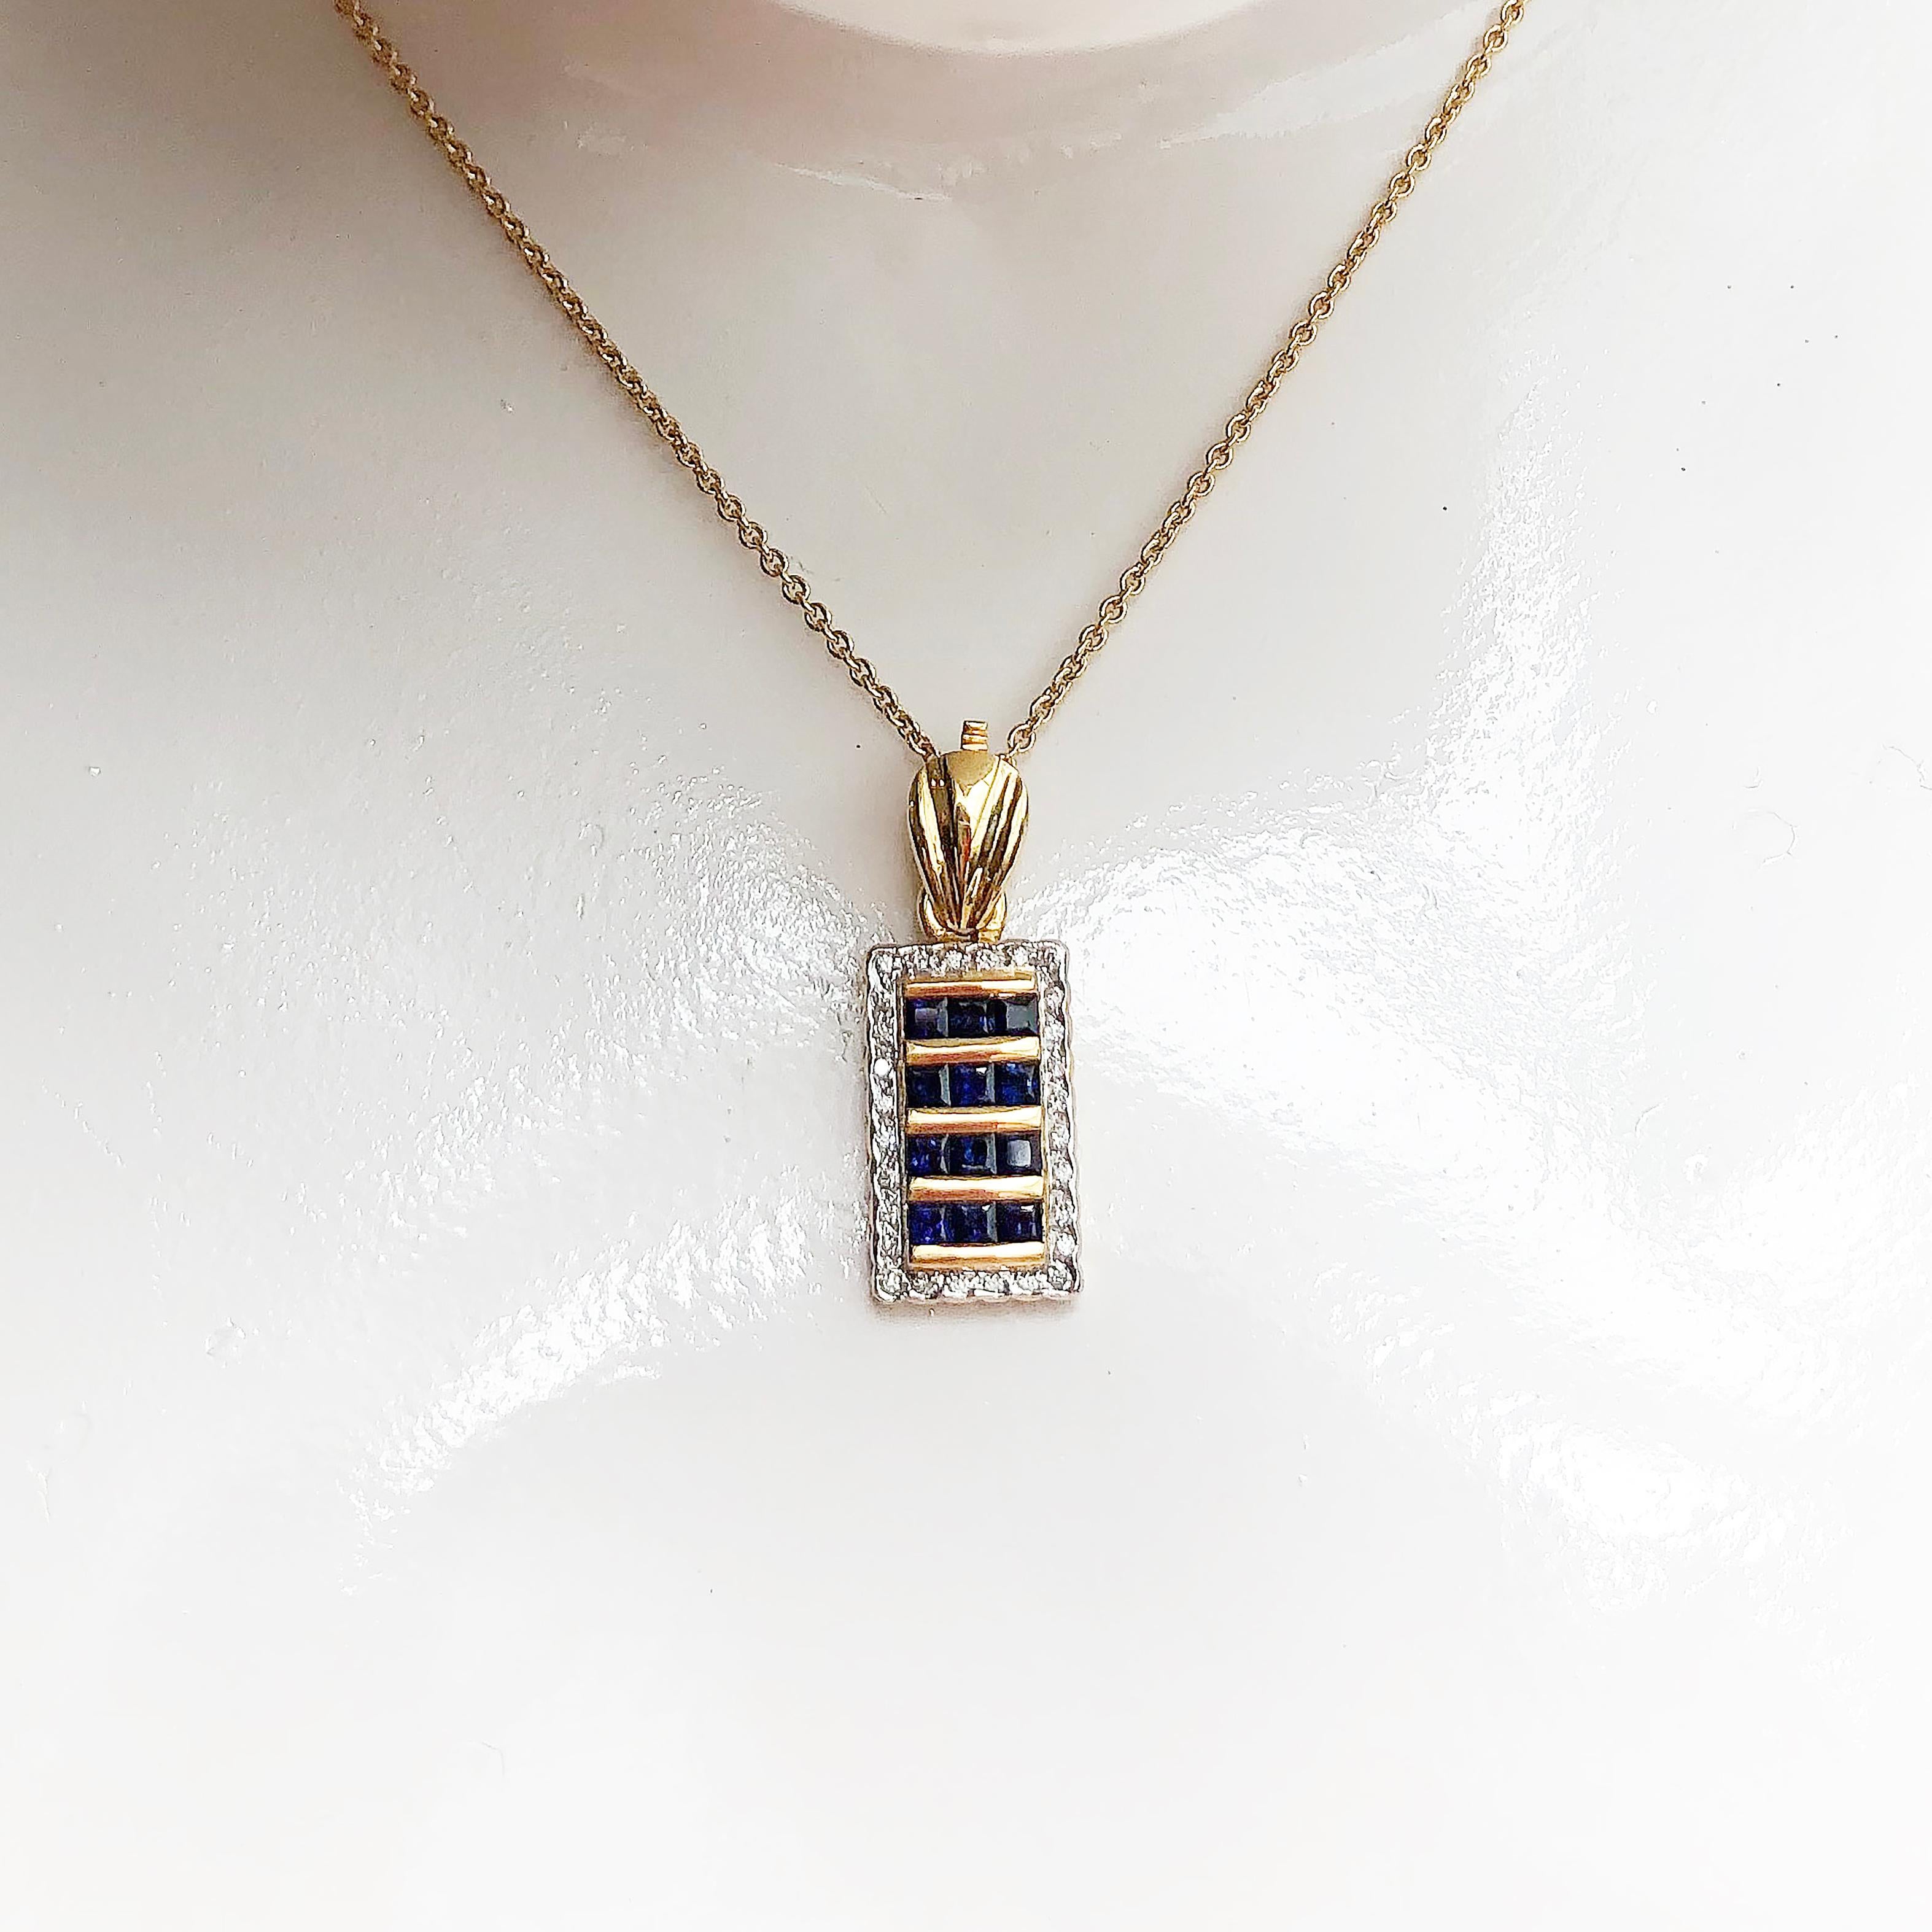 Pendentif en saphir bleu 0,88 carat et diamant 0,21 carat serti dans une monture en or 18 carats
(chaîne non incluse)

Largeur : 1,0 cm
Longueur : 2,8 cm 

